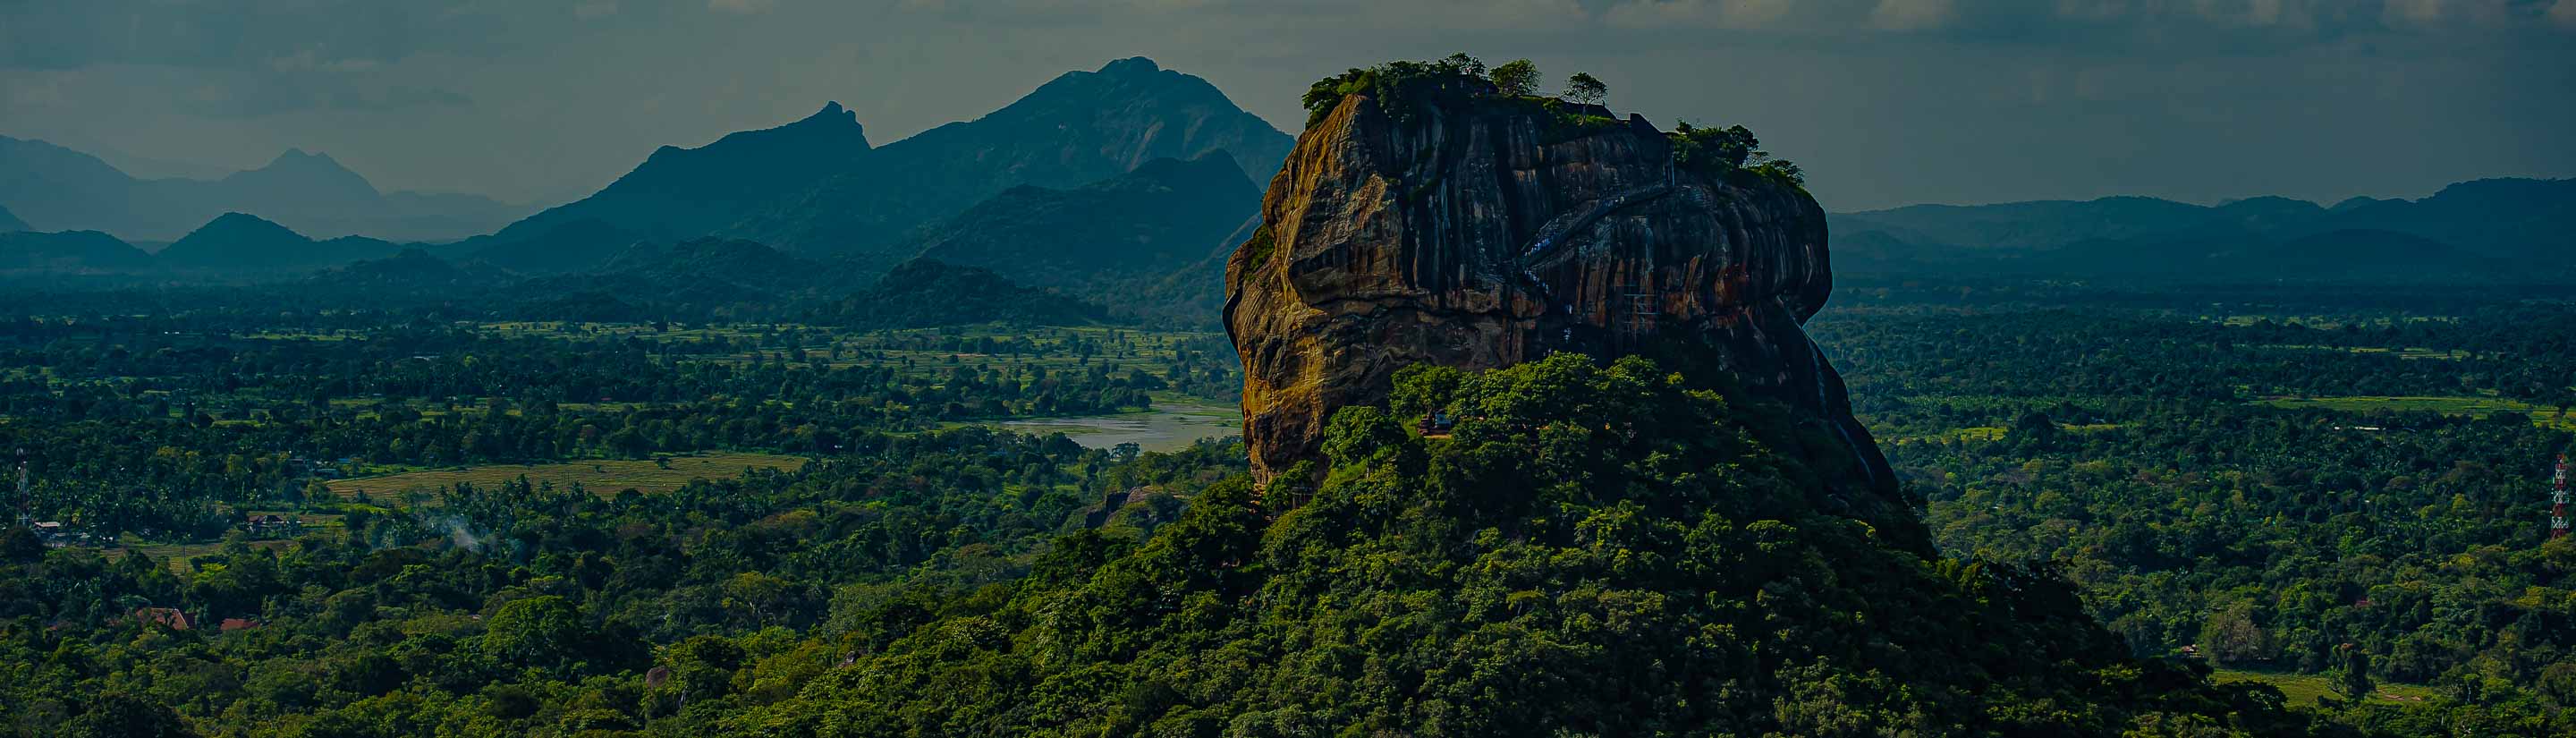 Panorama des Lion Rock bei Sigiriya auf Sri Lanka